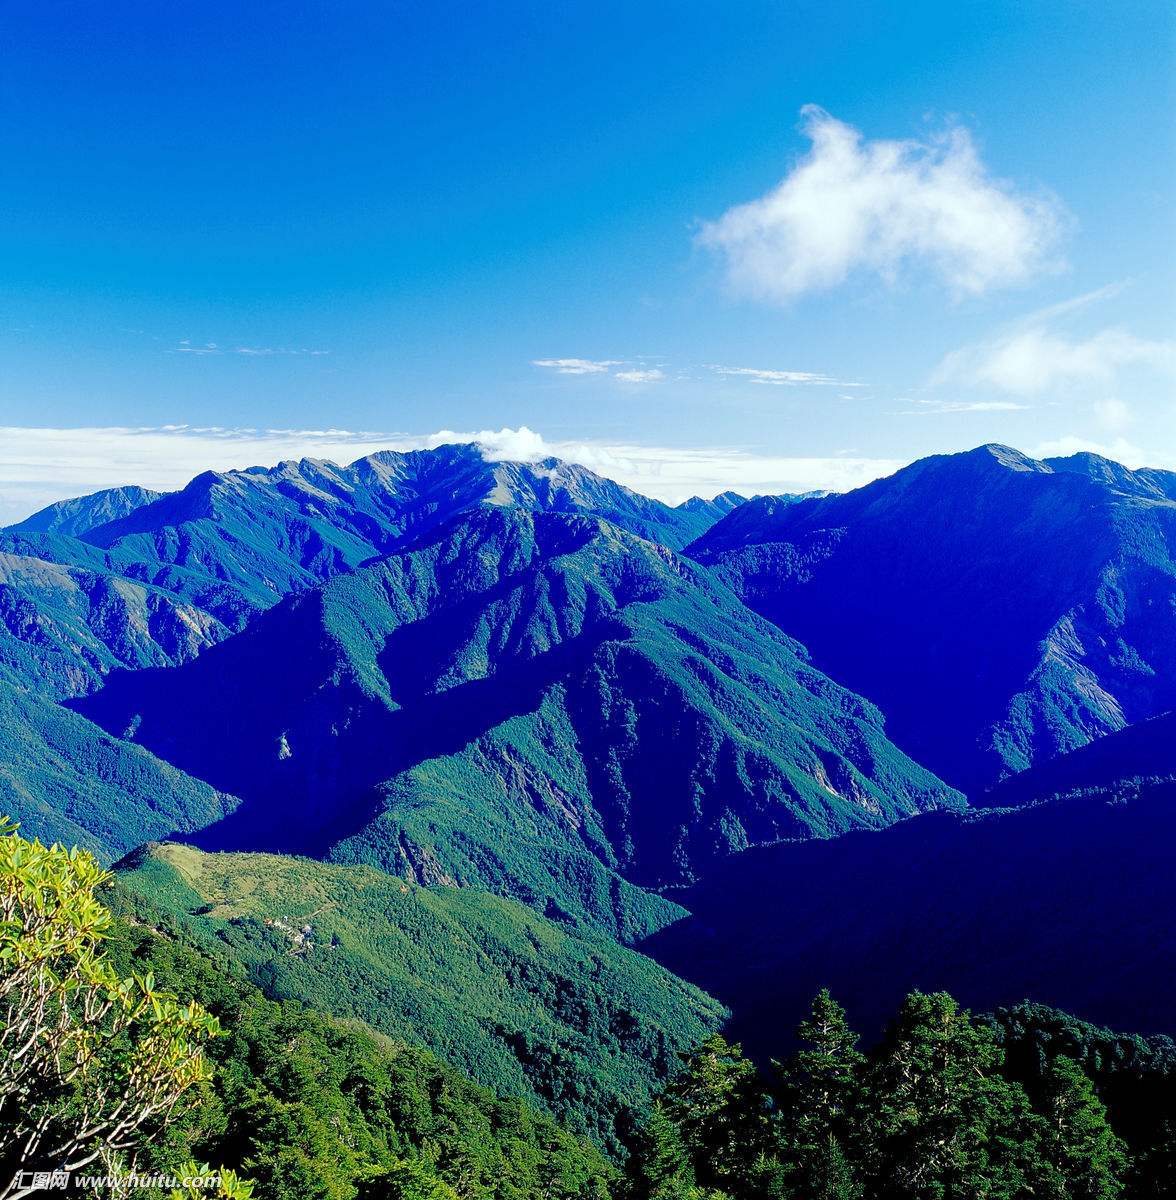 巍峨挺拔的玉山山脉,耸立在台湾岛中央偏南,阿里山东侧,中央山脉以西